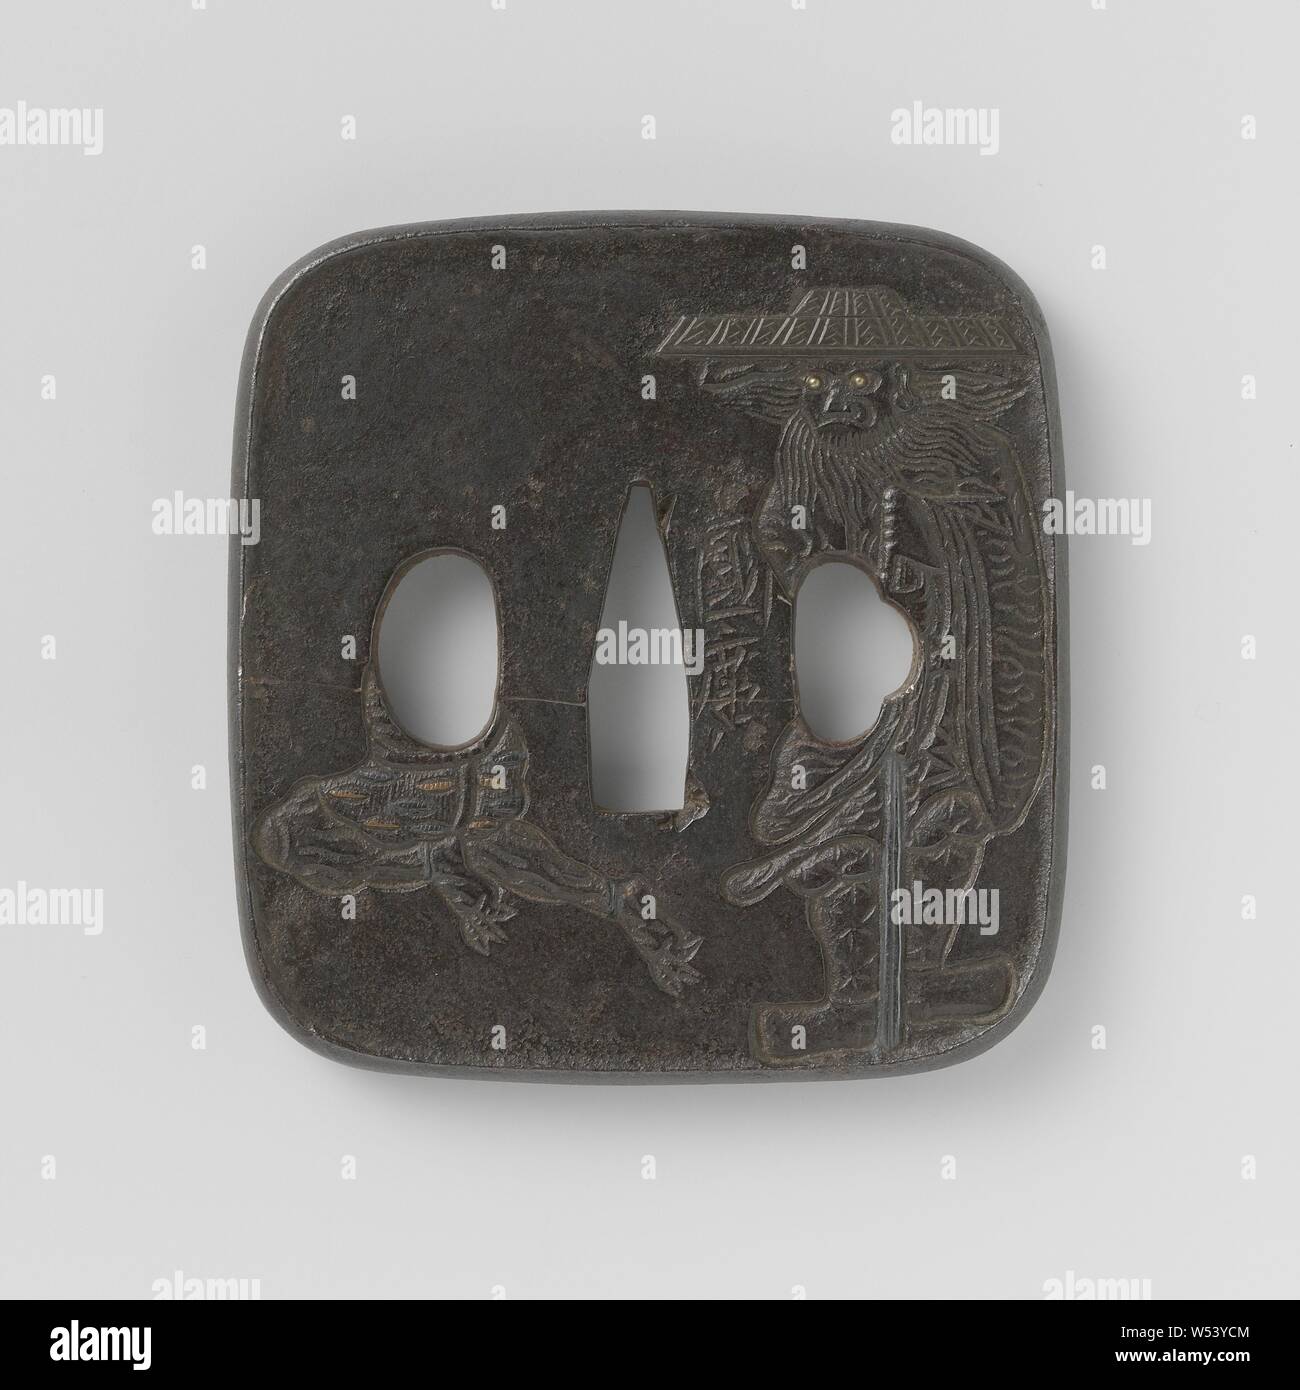 Protezione mano, arrotondato tsuba rettangolare con bordo rialzato, immagine in rilievo sommerso del 'demon killer' Shoki chi è a caccia di un diavolo attraverso uno dei ryo-hitu, alcuni dettagli in oro, argento, rame e shibuichi, firmato "kunihiro'., Kunihiro, Giappone, 1800 - 1900, Edo-periodo (1600-1868) / Meiji-periodo (1868-1912), ferro (metallo), oro (metallo), argento (metallo), Rame (metallo), h 7.3 cm × W 7 cm Foto Stock